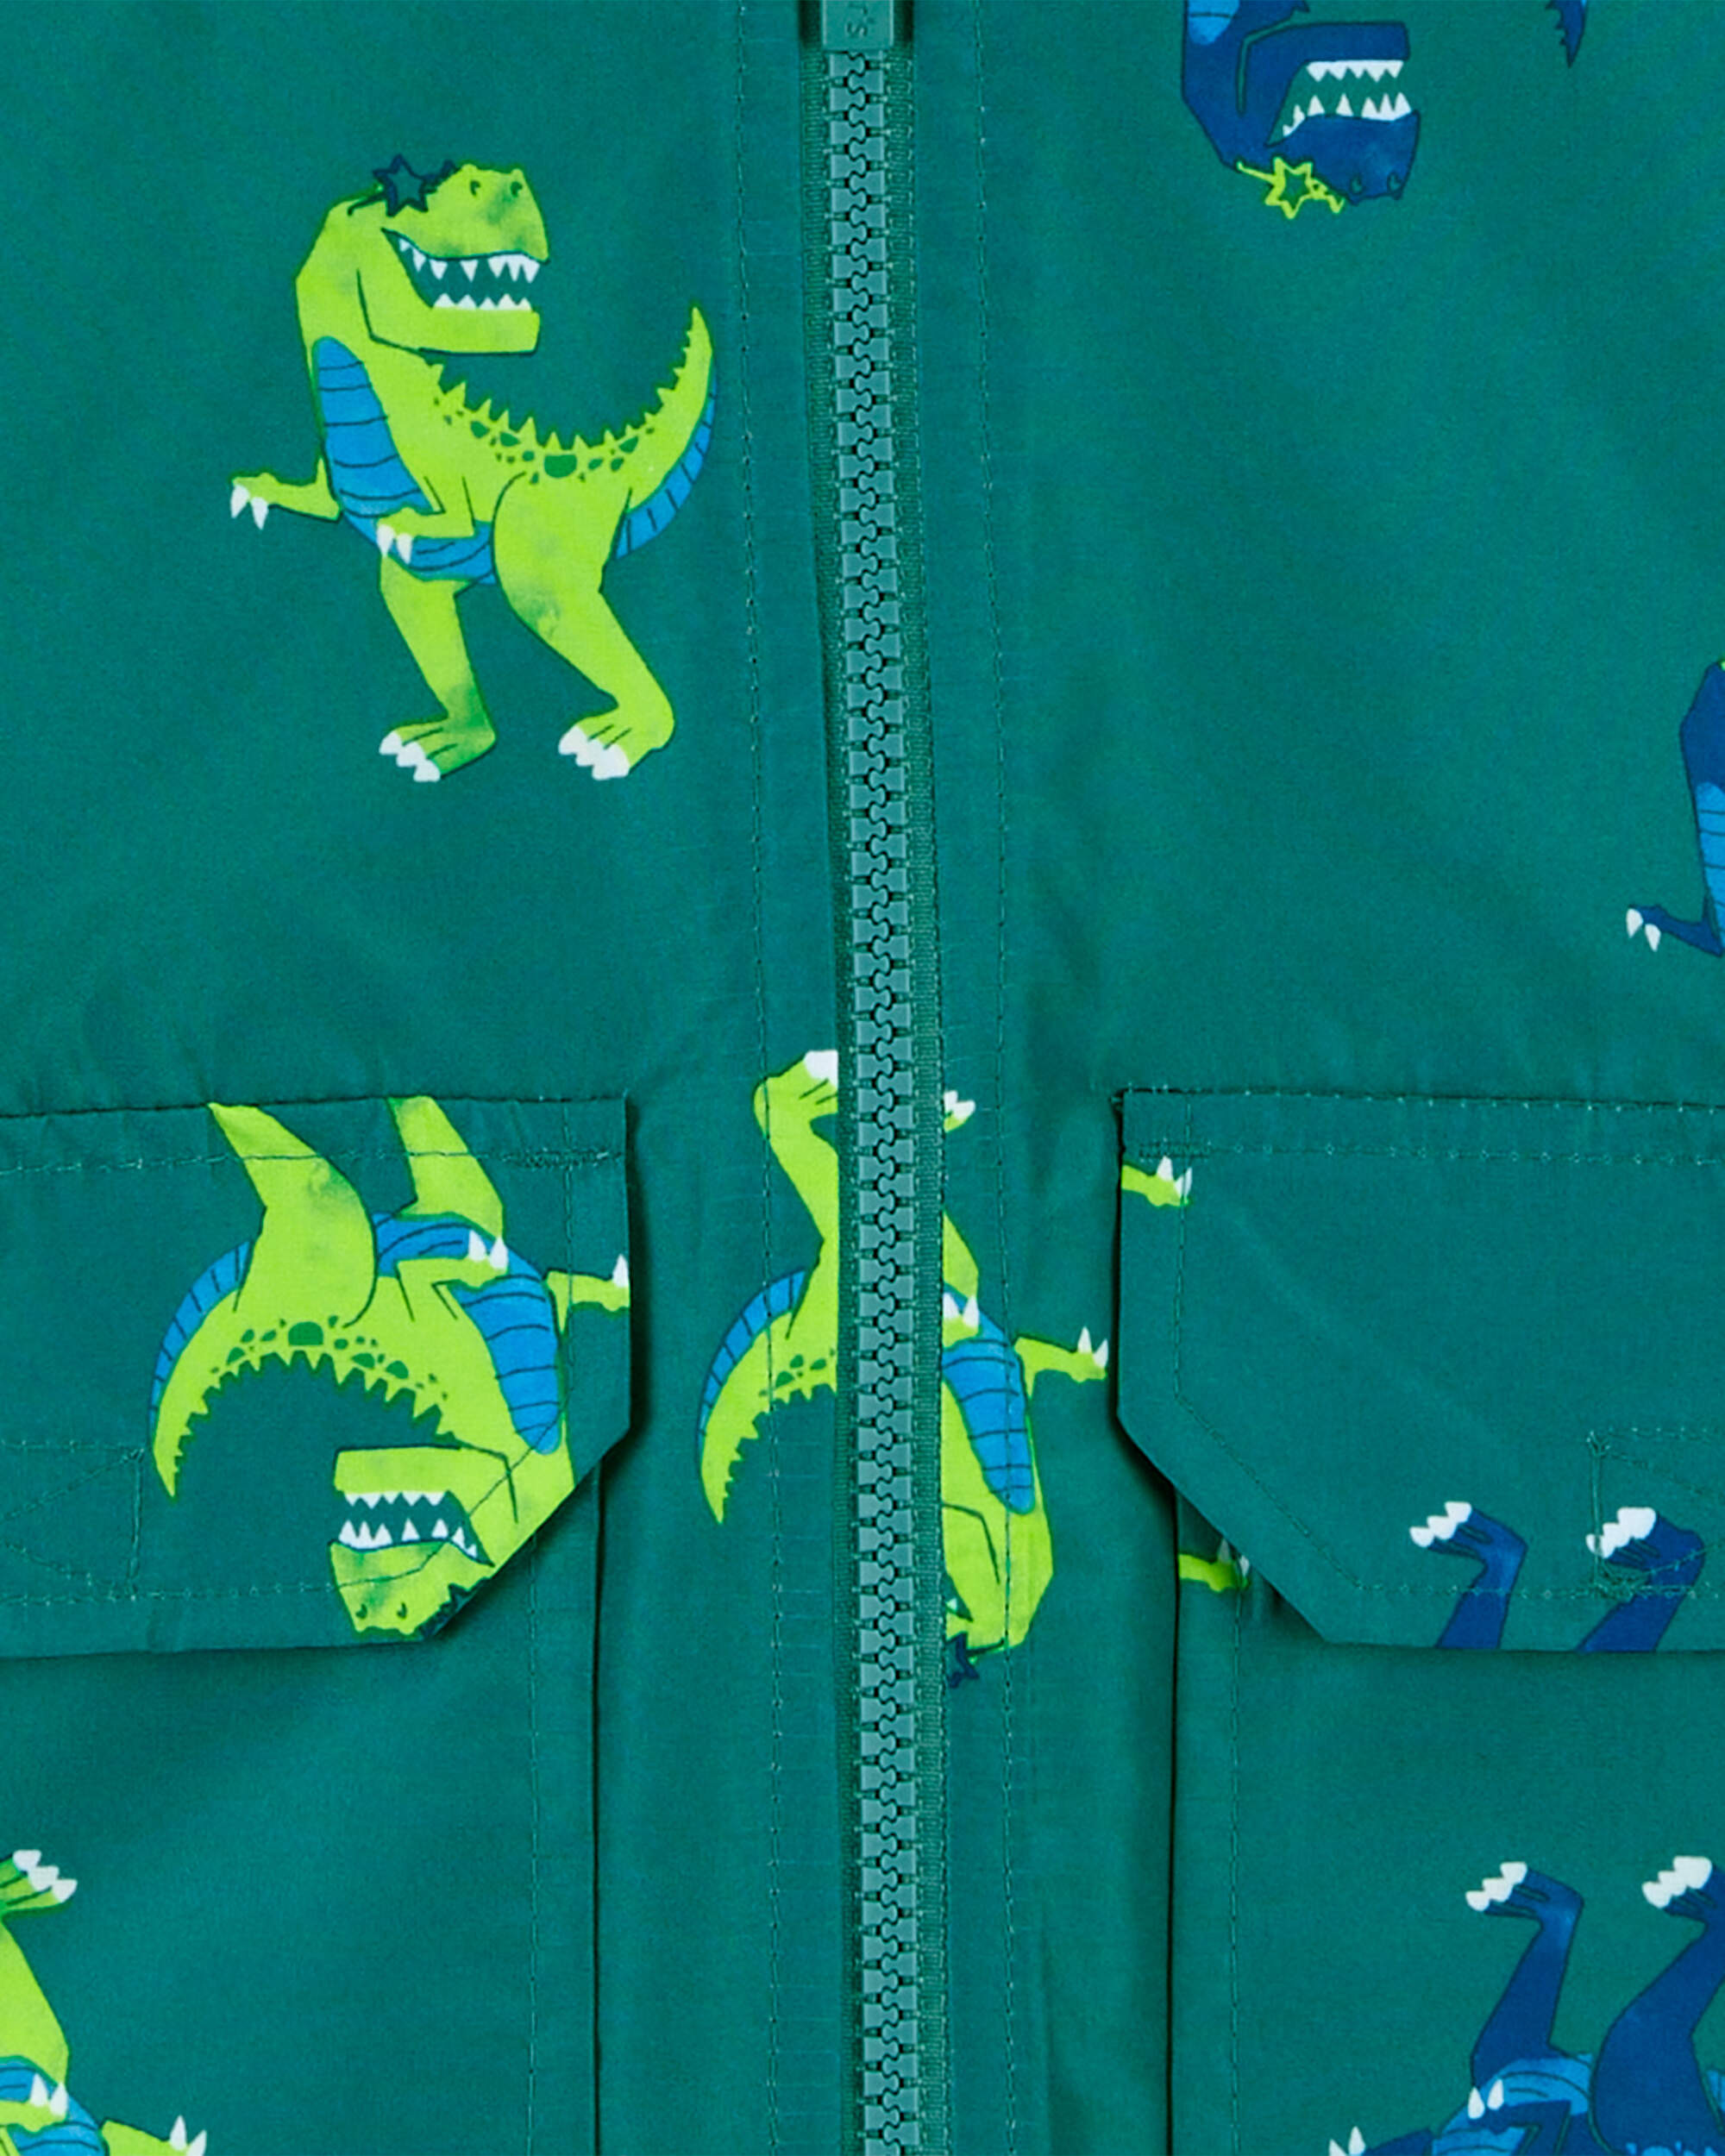 Toddler Dino Print Rain Jacket